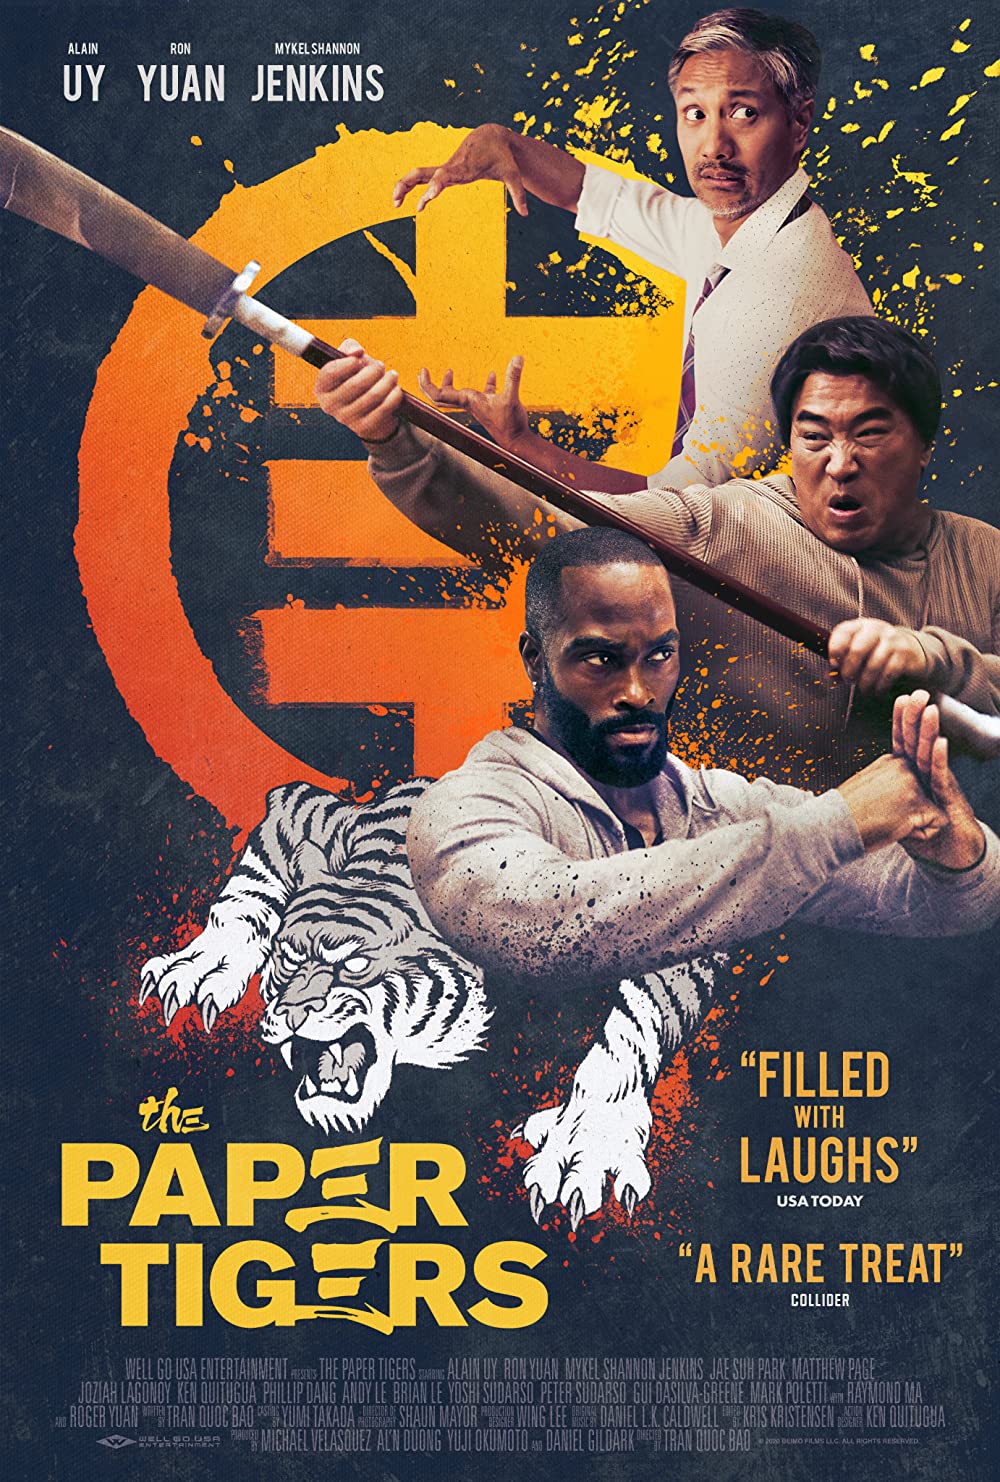 The Paper Tigers | Trailer zur Martial Arts Komödie | 2021